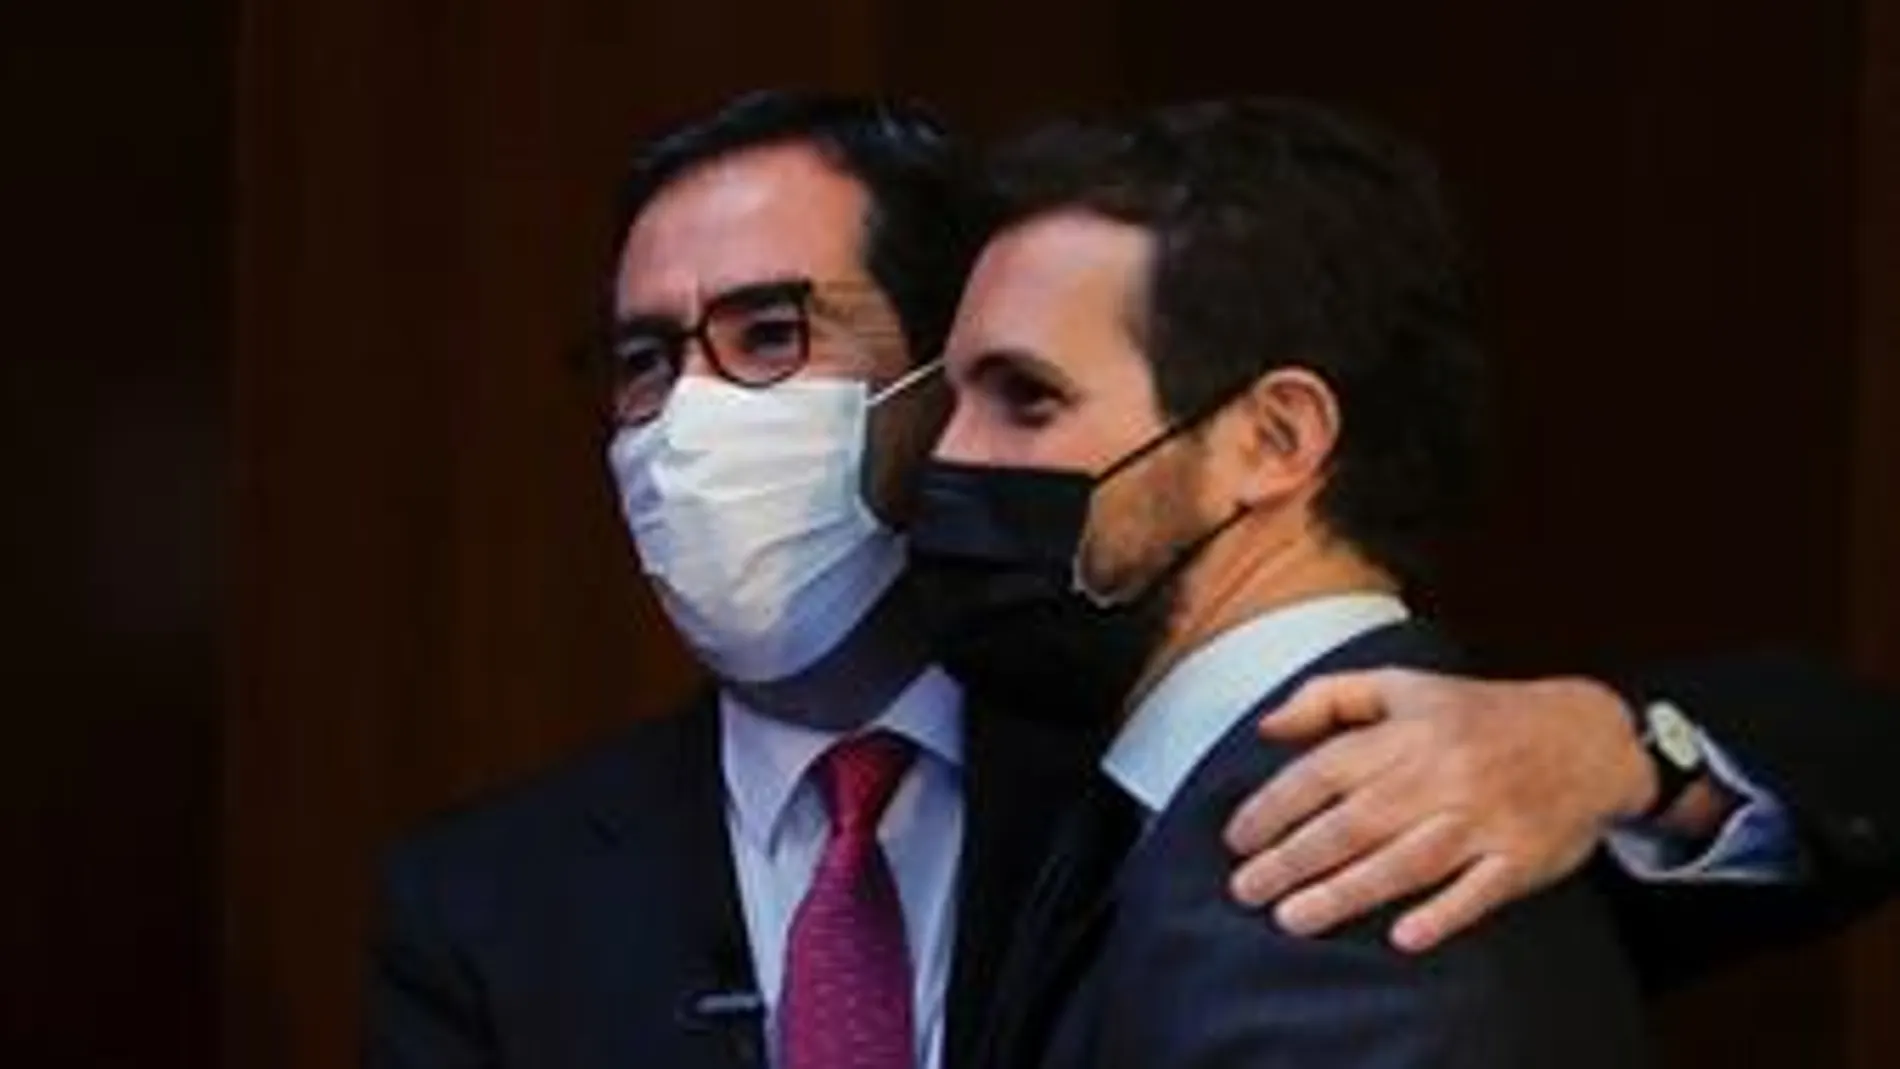 El abrazo de Antonio Garamendi y Pablo Casado